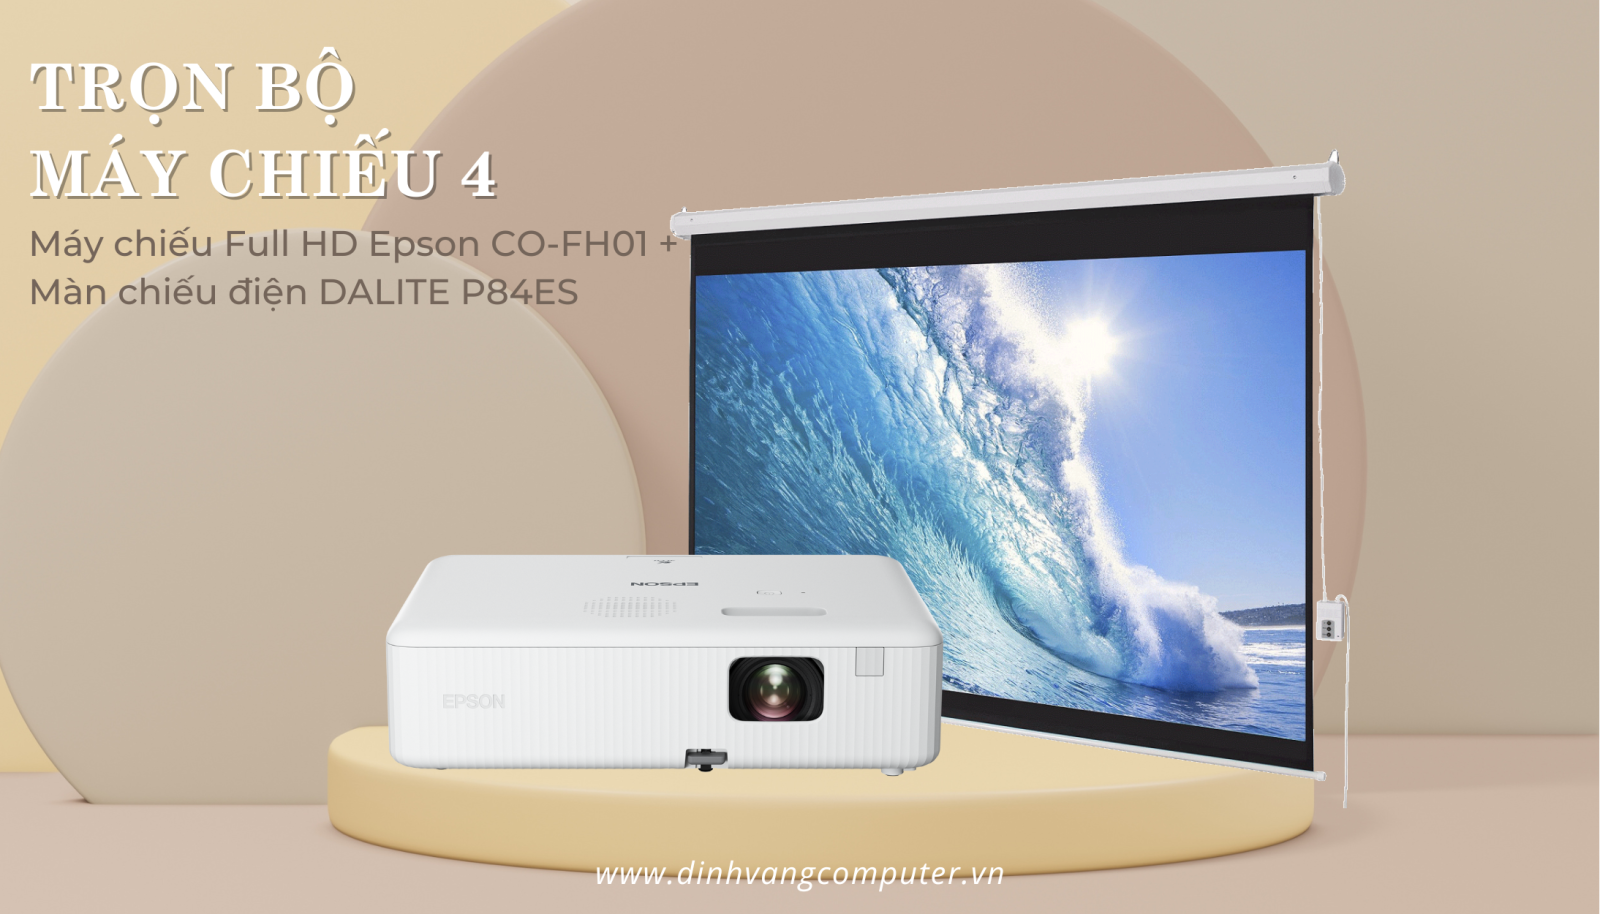 Trọn bộ máy chiếu 4: Máy chiếu Full HD Epson CO-FH01 + Màn chiếu điện DALITE P84ES + Khung treo.